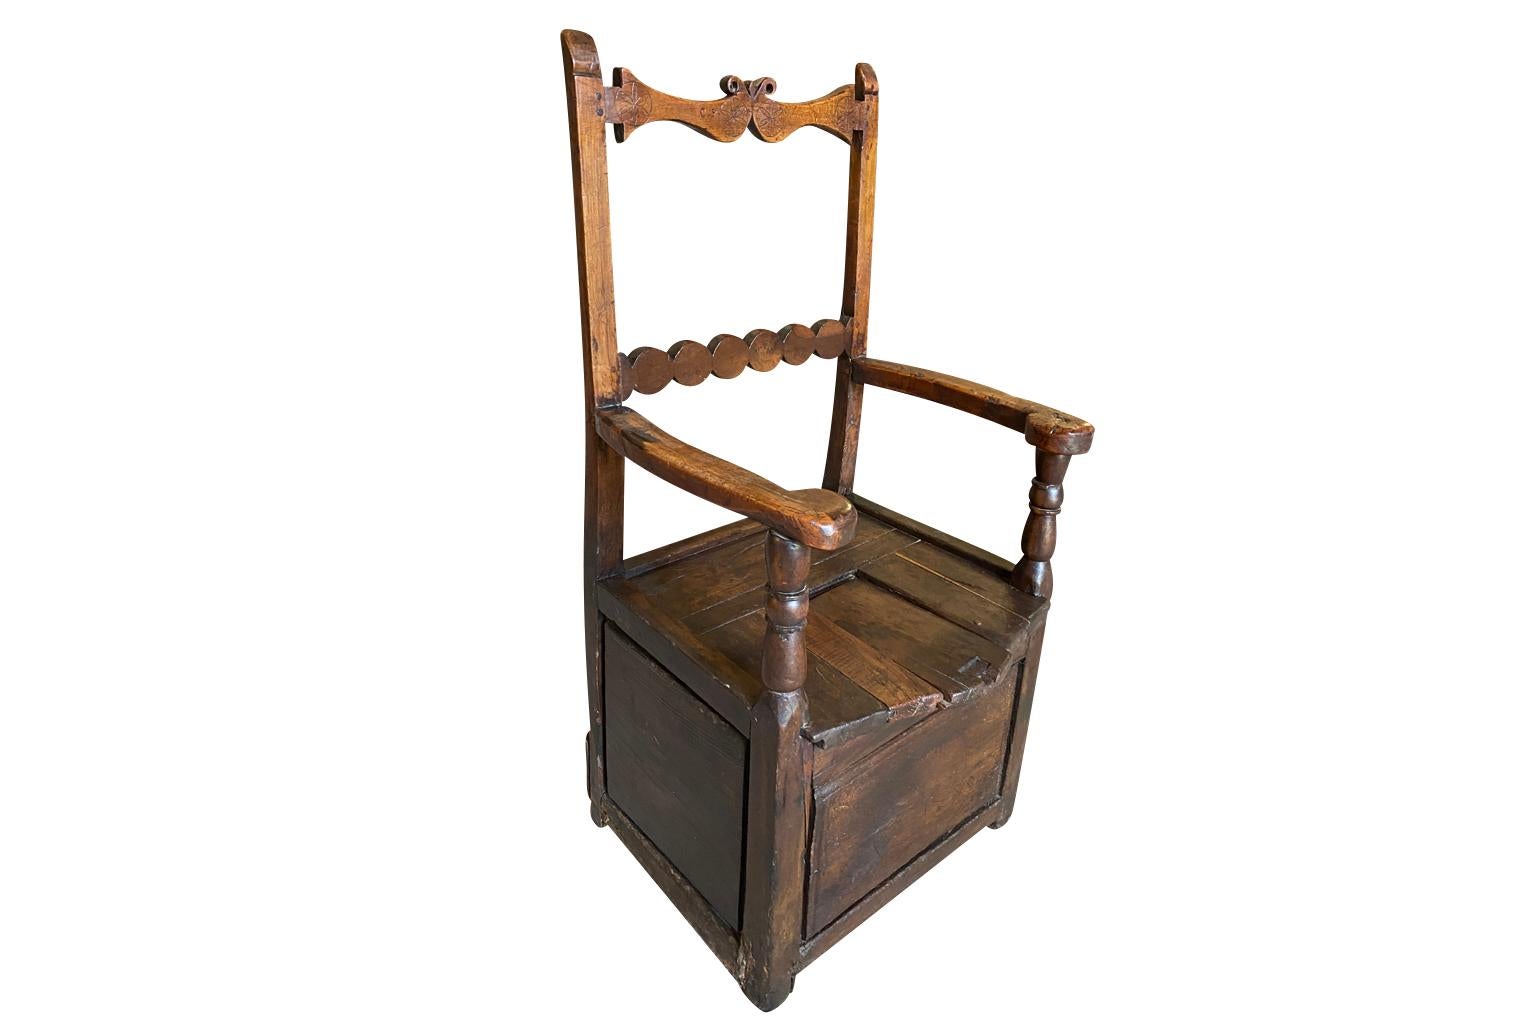 Ein reizvoller Arte Populaire Salt Box Chair aus der Auvergne, Frankreich, aus dem 18.  Solide gebaut aus reichlich gebeizter Eiche mit schön geschnitzter Rückenlehne und einer abnehmbaren Latte auf dem Sitz für die Salzaufbewahrung.  Super Patina